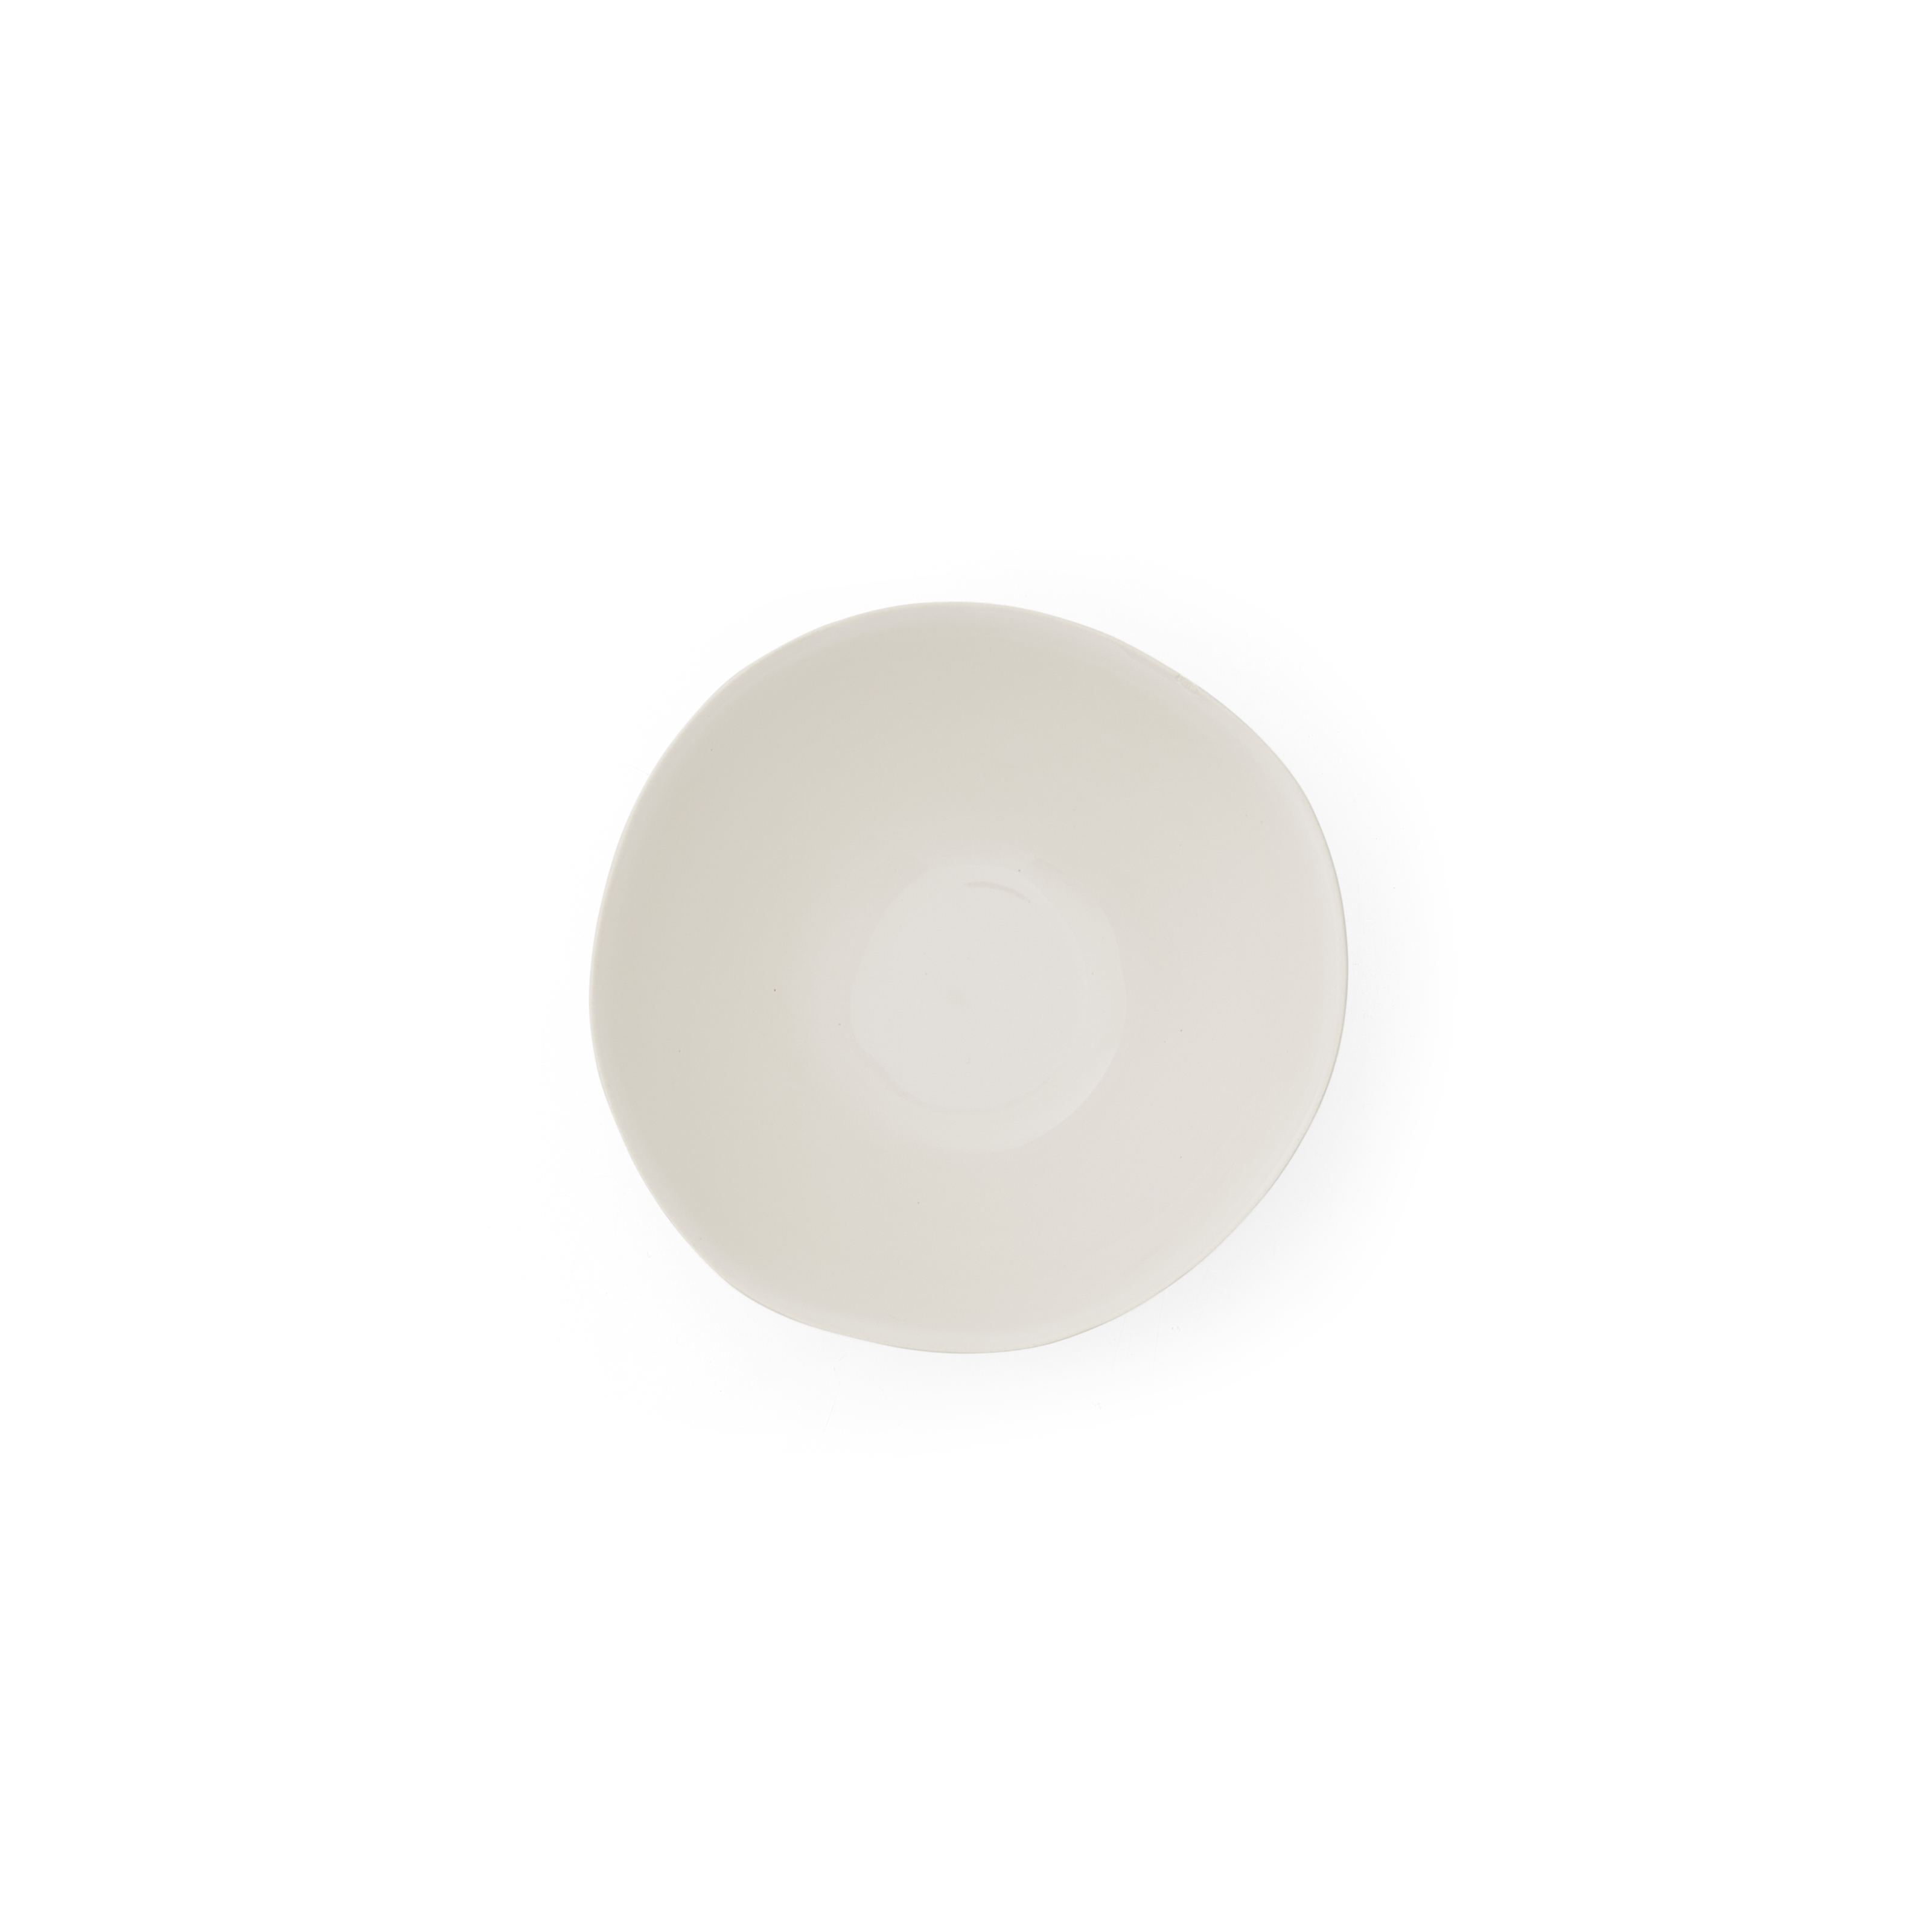 Sophie Conran Arbor bowl, Cream image number null